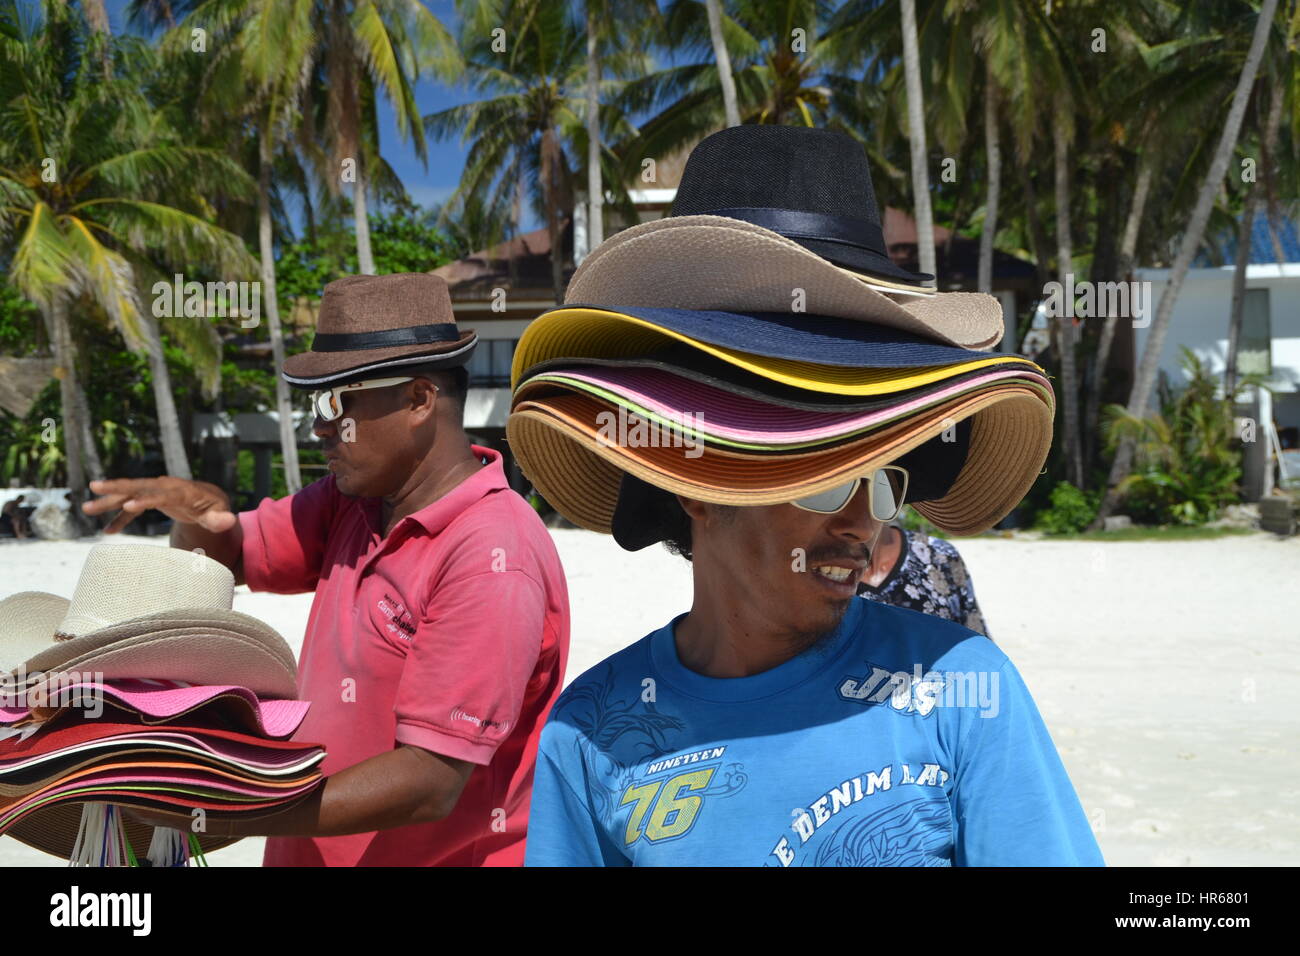 Sombreros Playa Hombre